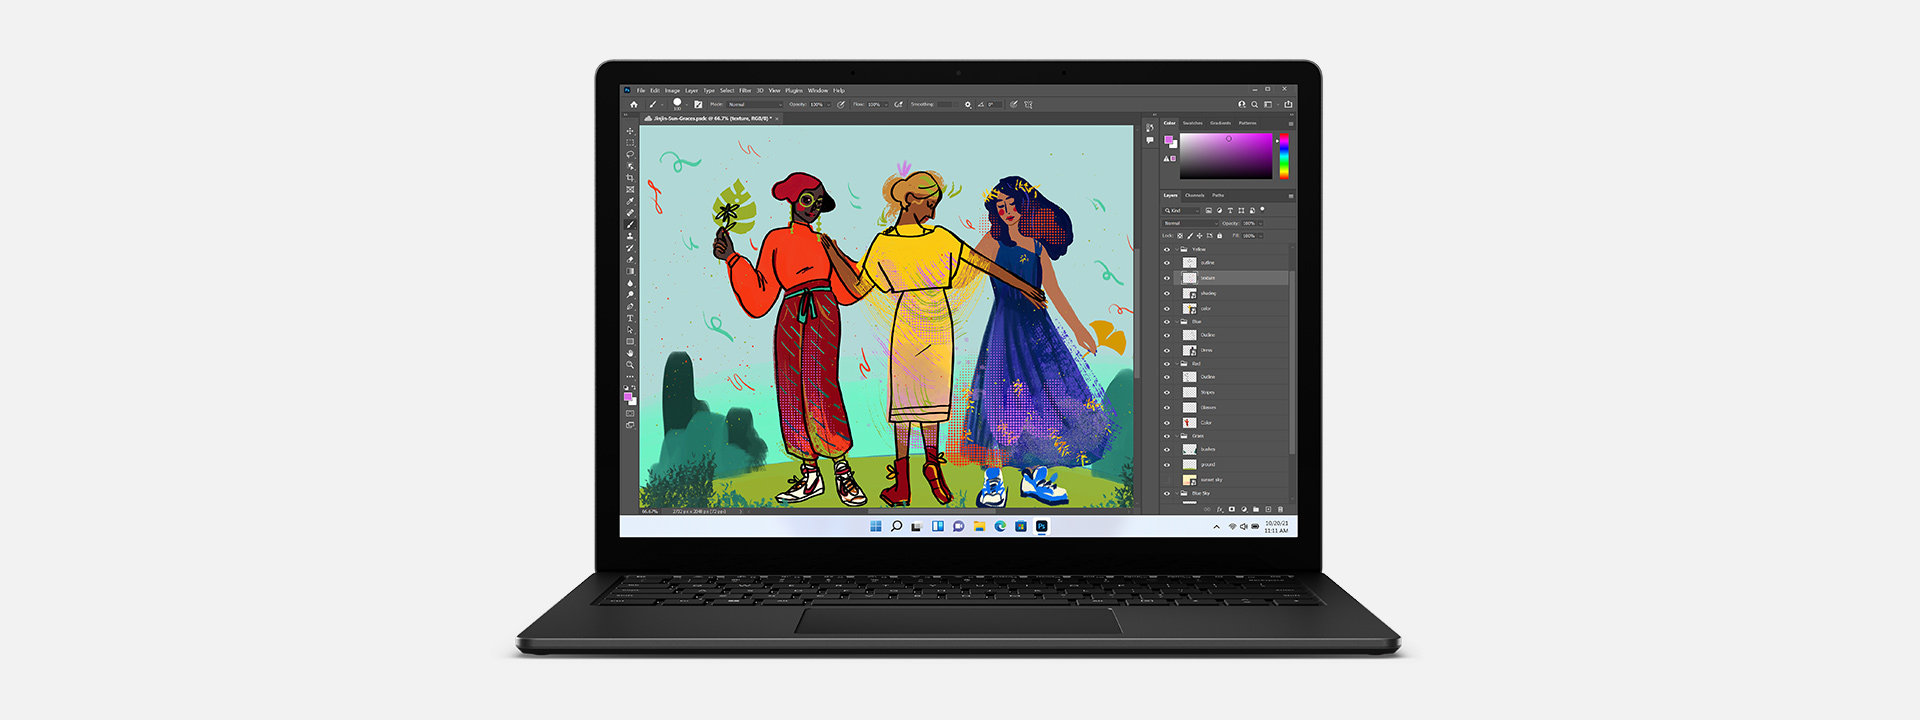 جهاز Surface Laptop 4 معروض عليه شكل فني من خلال برنامج Adobe Photoshop.